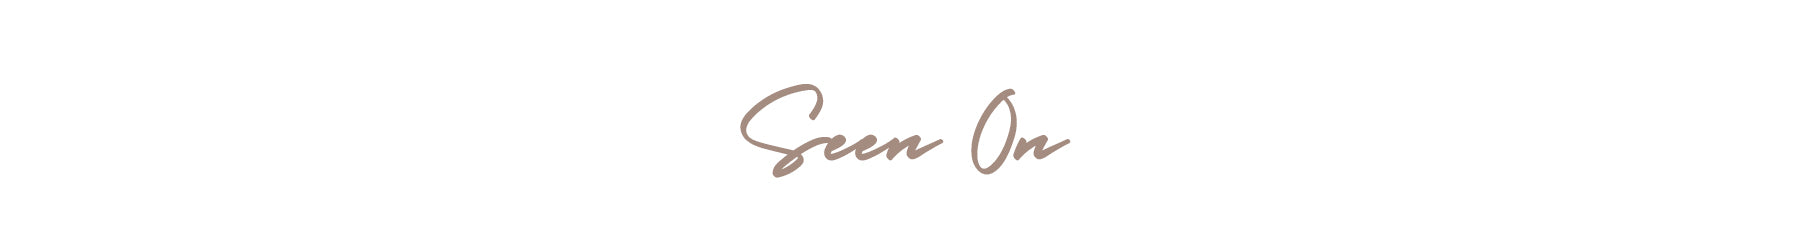 Script in brown reads 'Seen On'